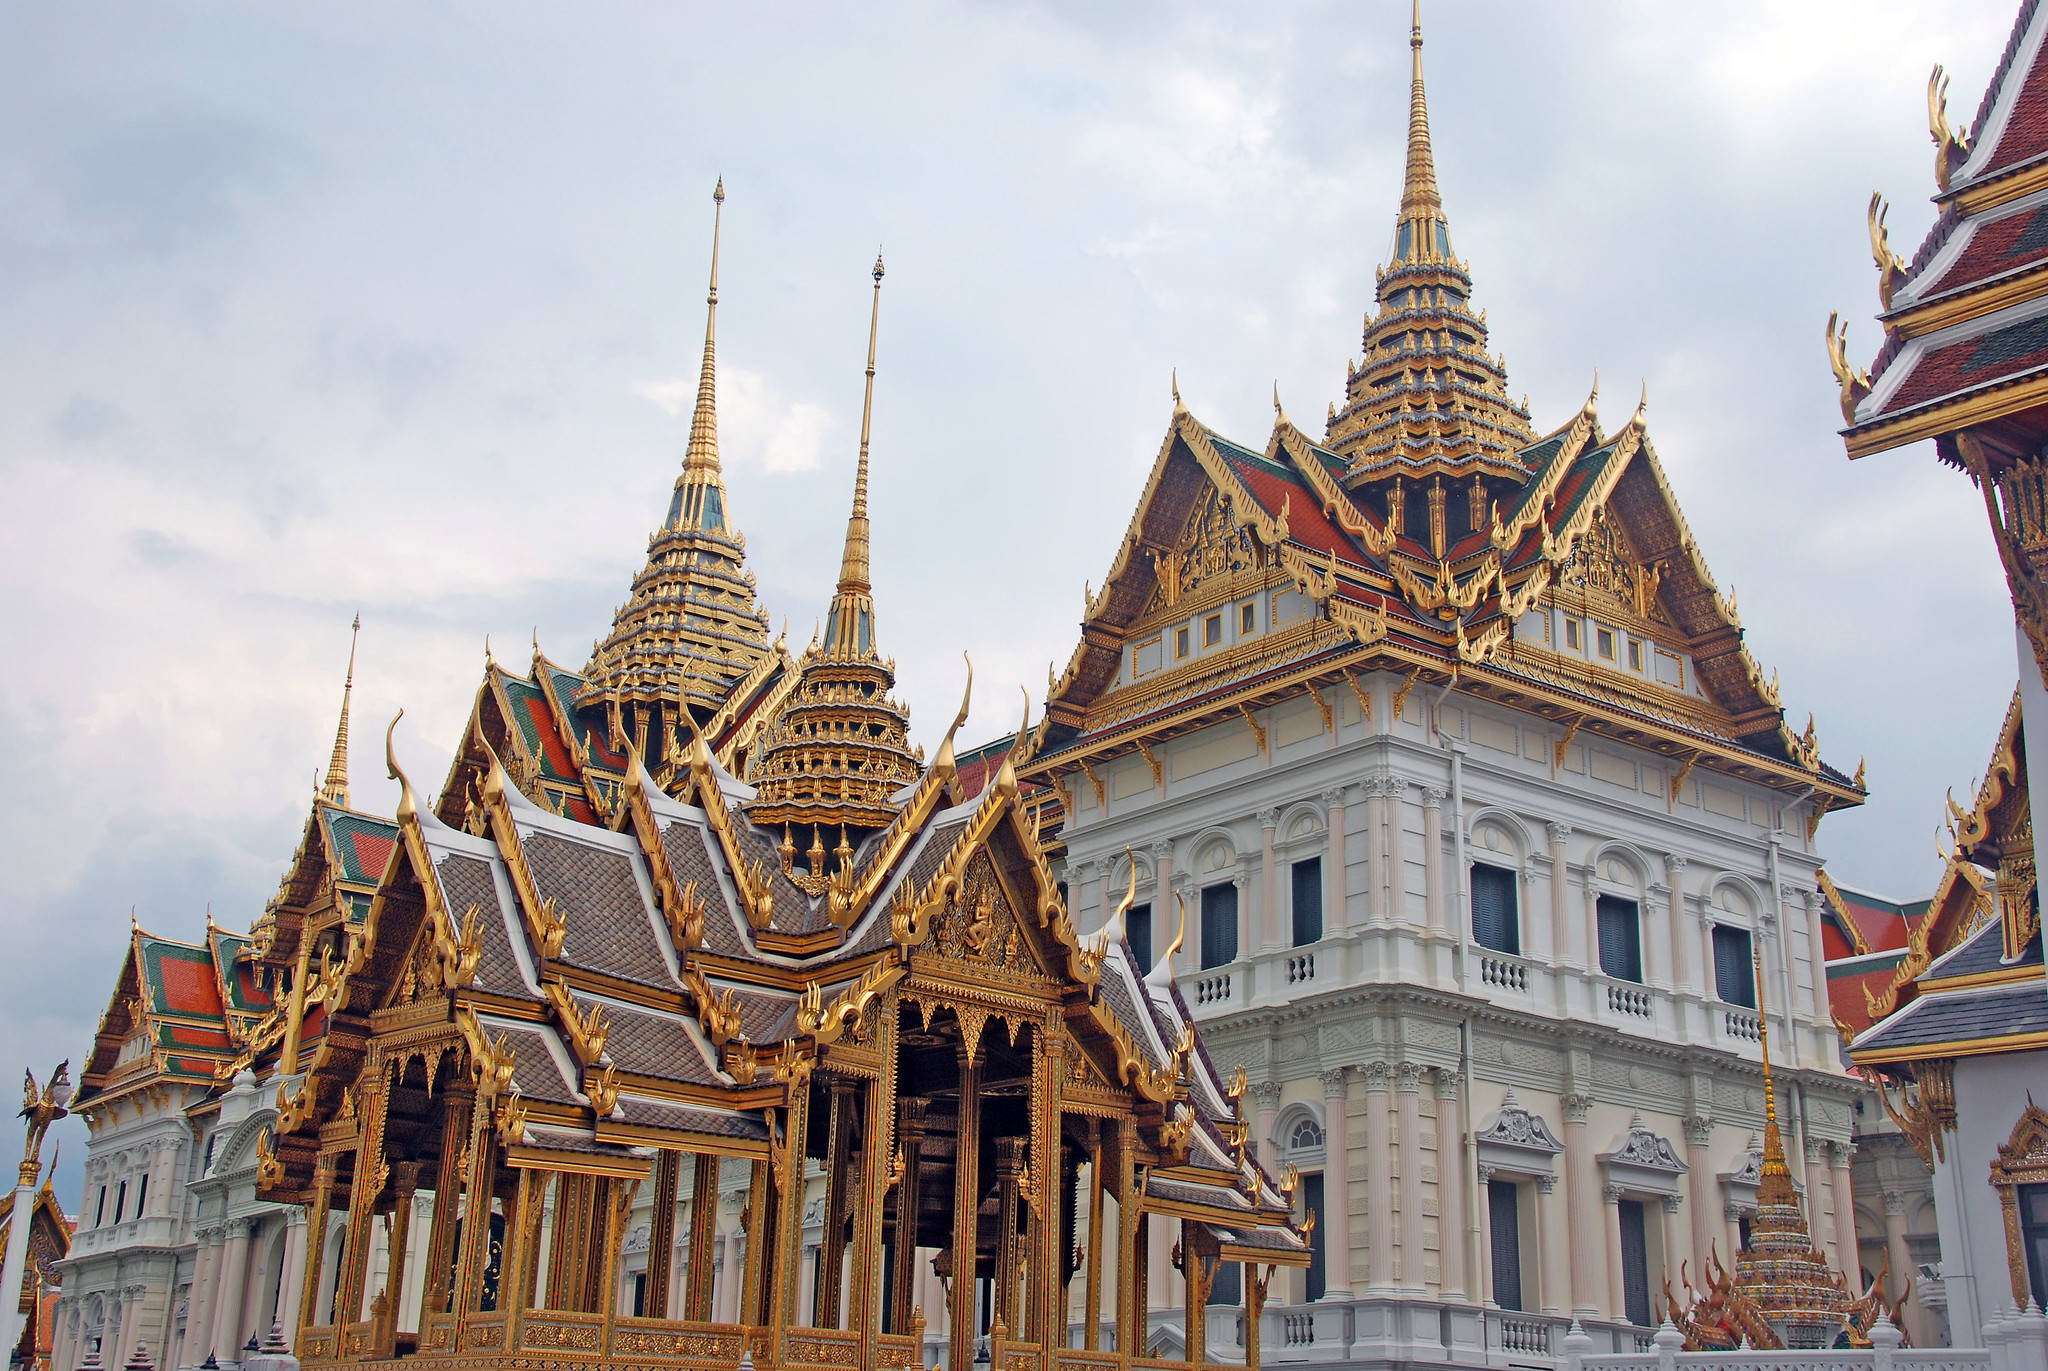 有国王的泰国皇宫:国王大部分时间在德国骑行,留下这座富丽堂皇的宫殿